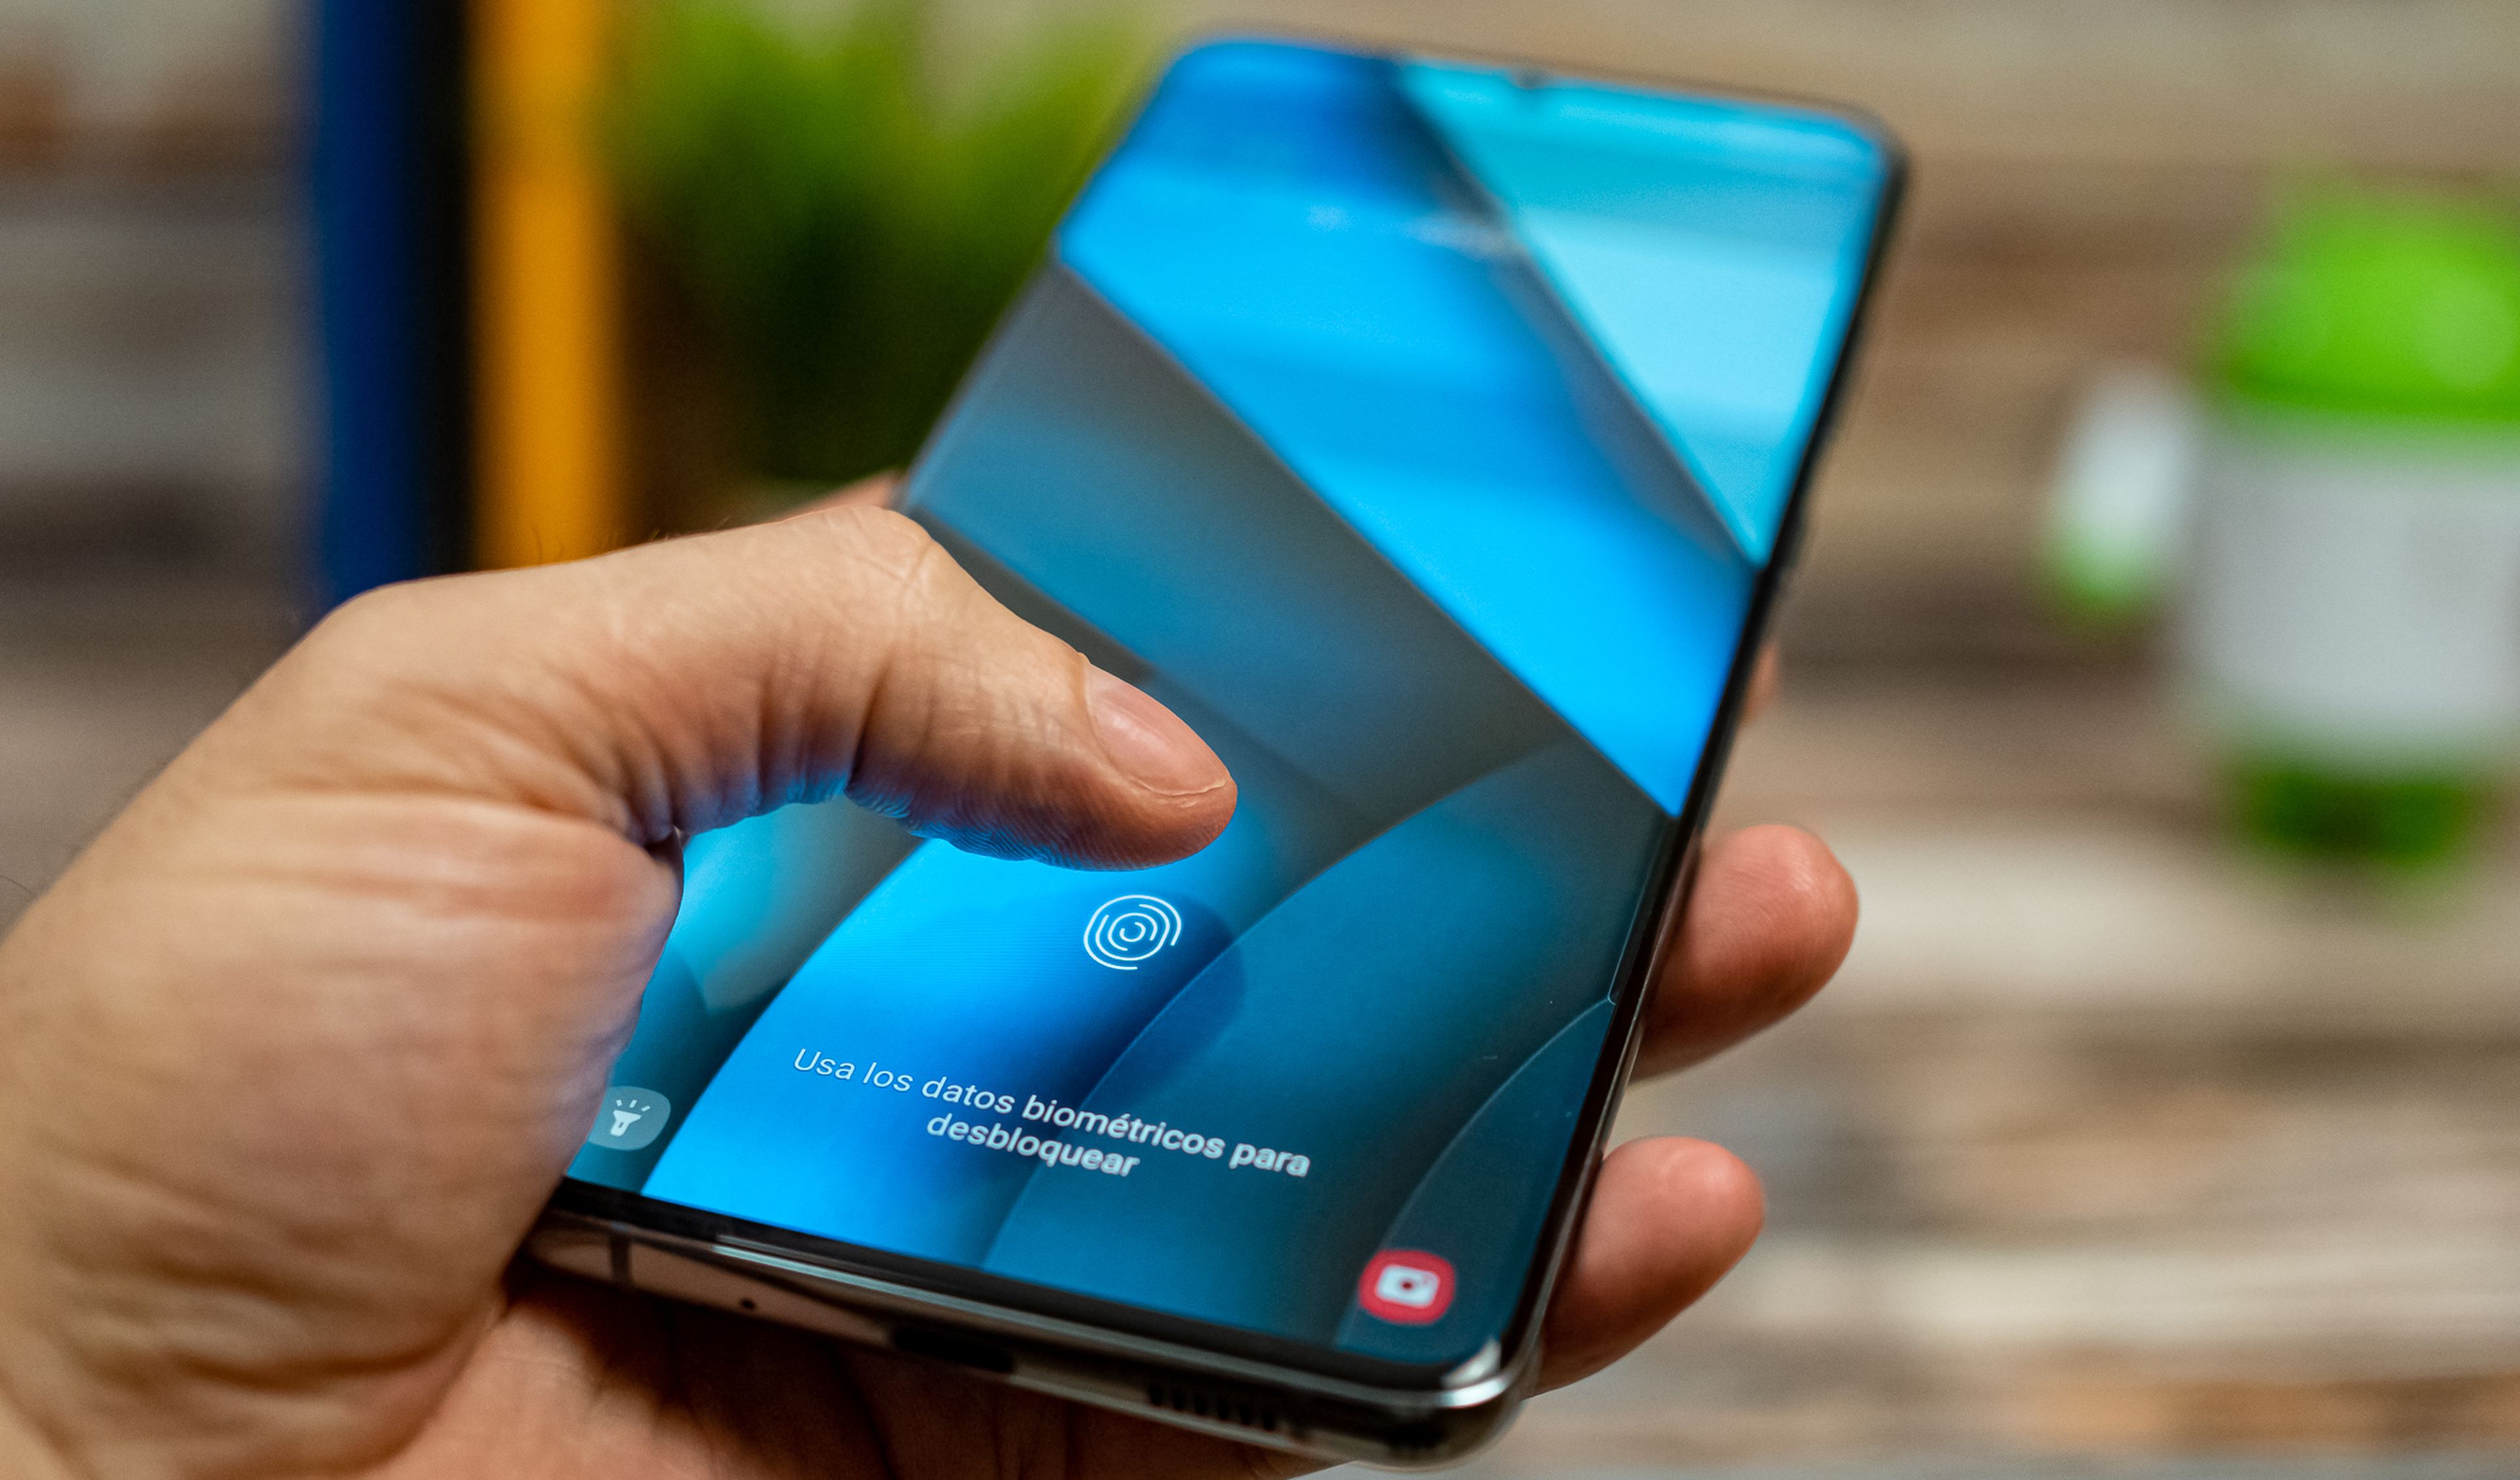 Samsung Galaxy S20 Ultra, análisis y opinión